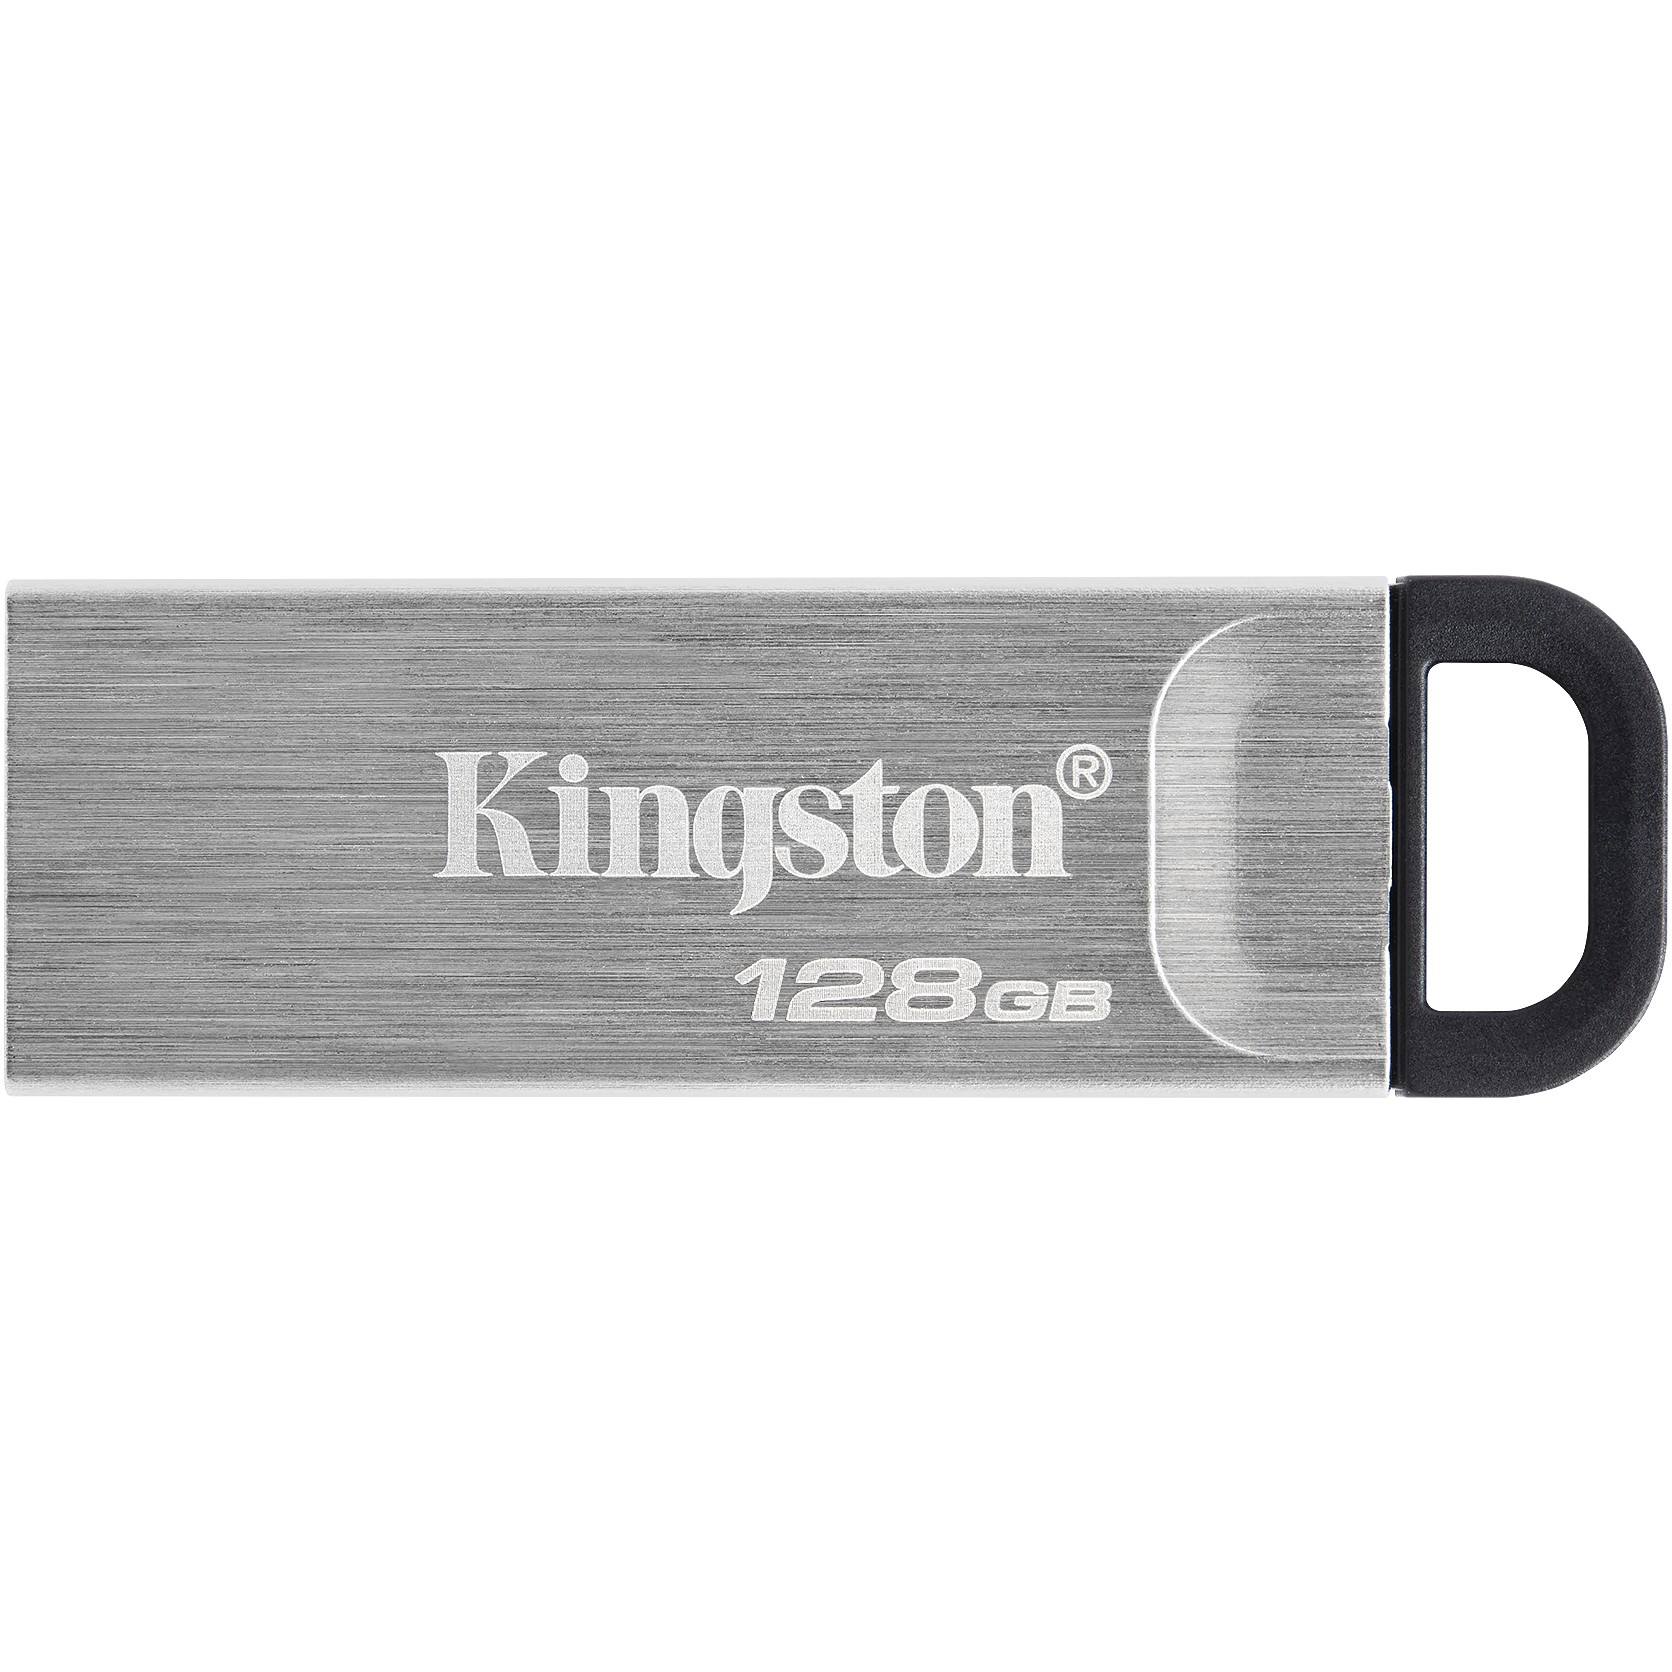 Kingston DTKN/128GB, USB-Stick, Kingston Technology USB  (BILD1)